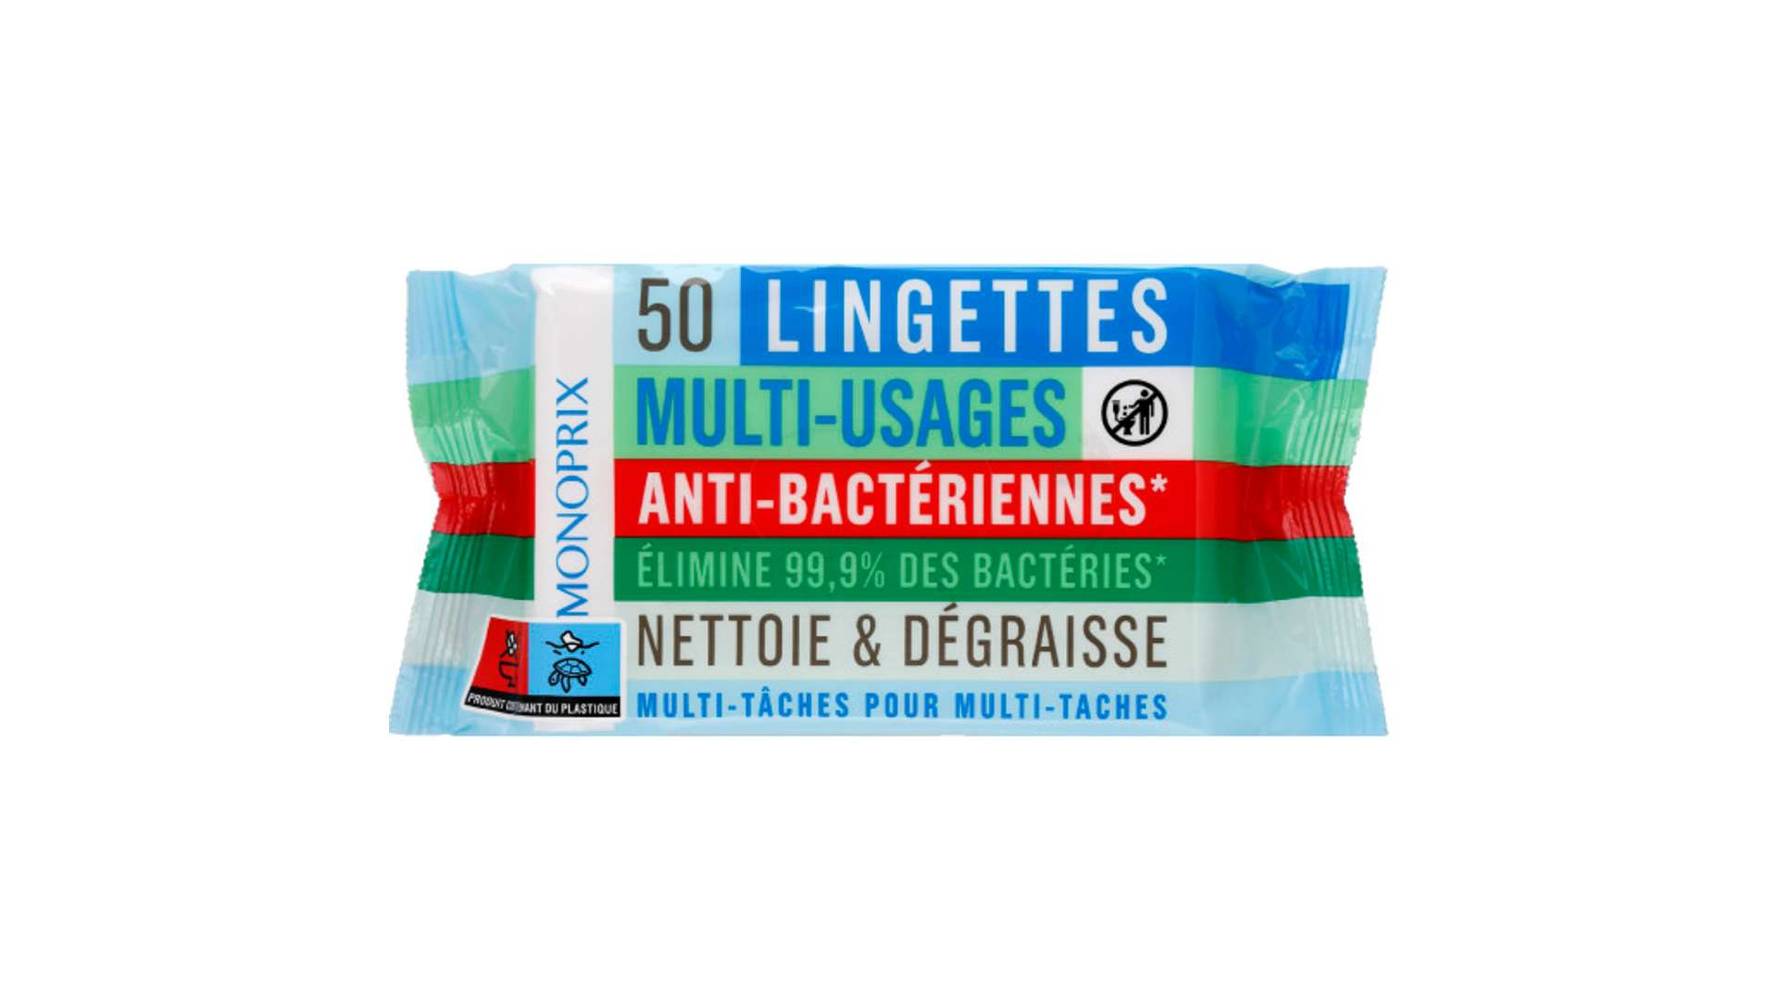 Monoprix Lingettes multi-usages anti-bact{riennes Le paquet de 50